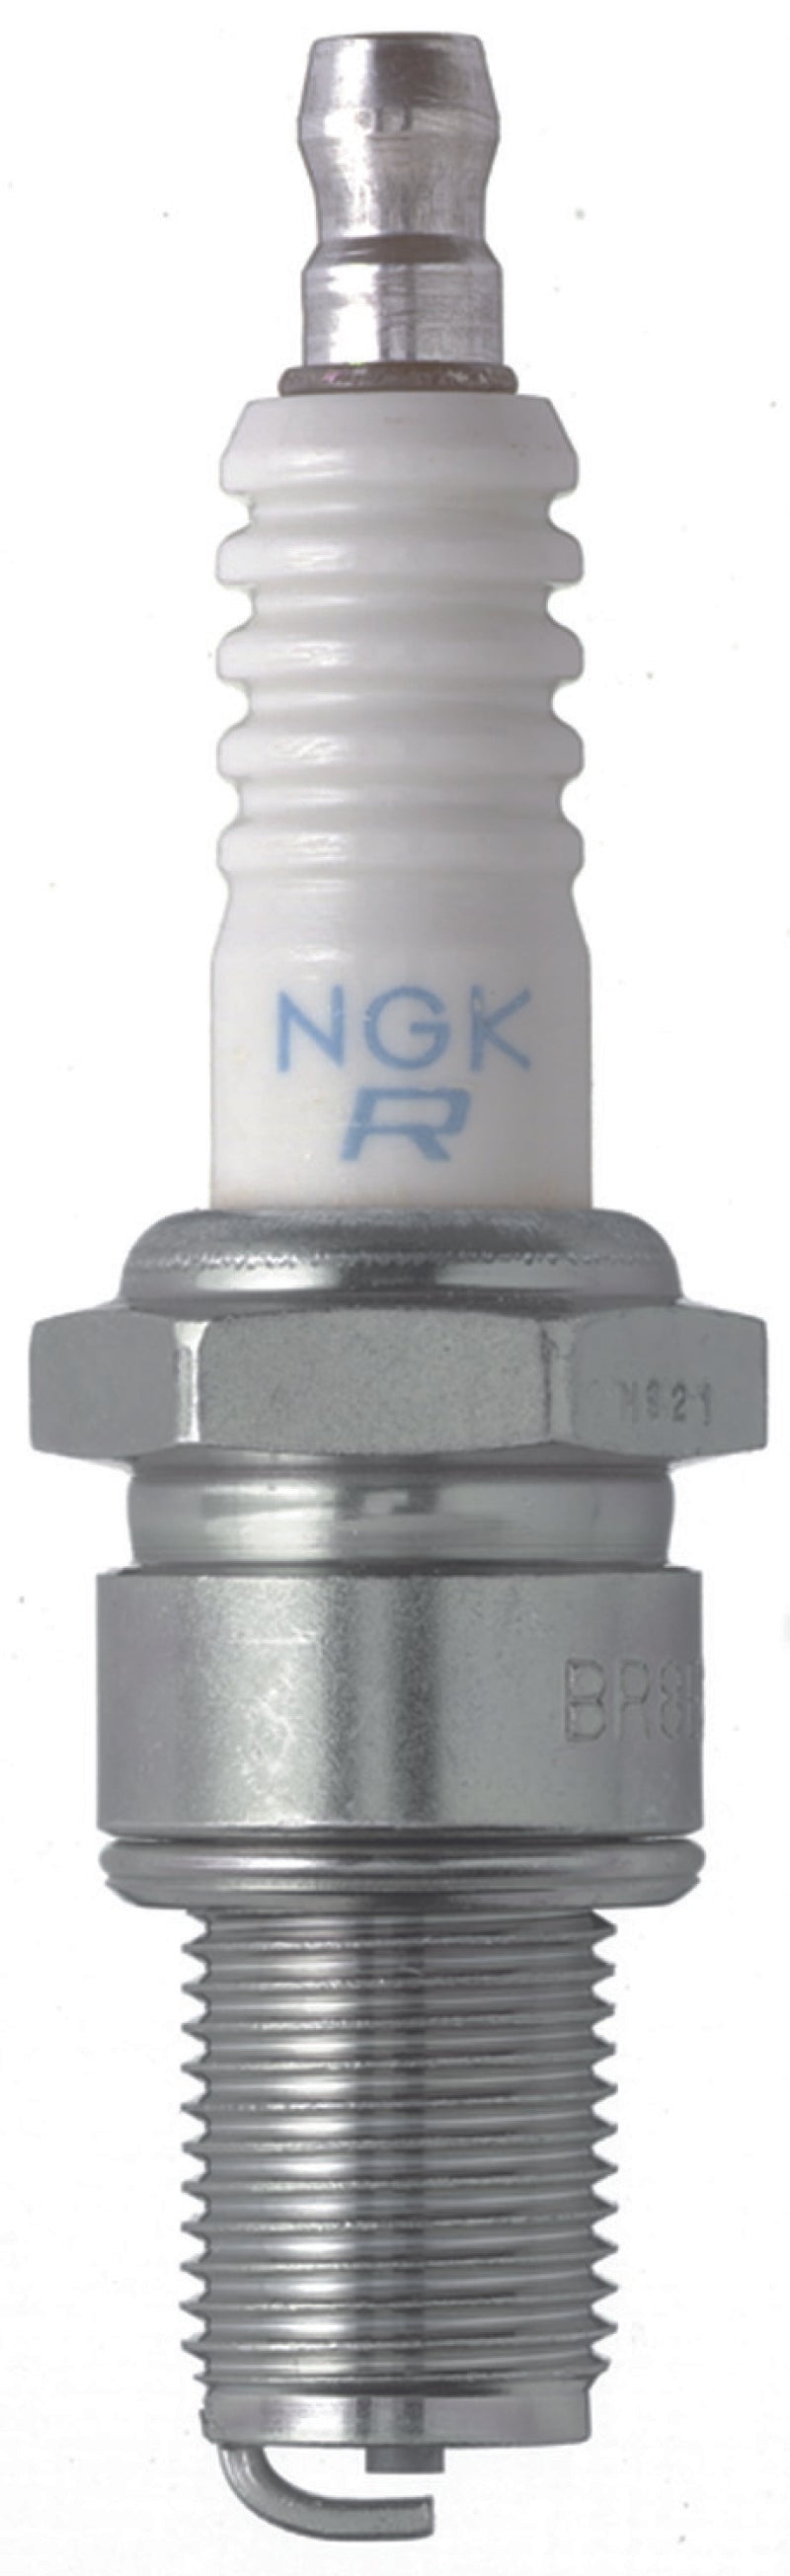 NGK Standard Spark Plug Box of 6 (BR6ES BLYB)